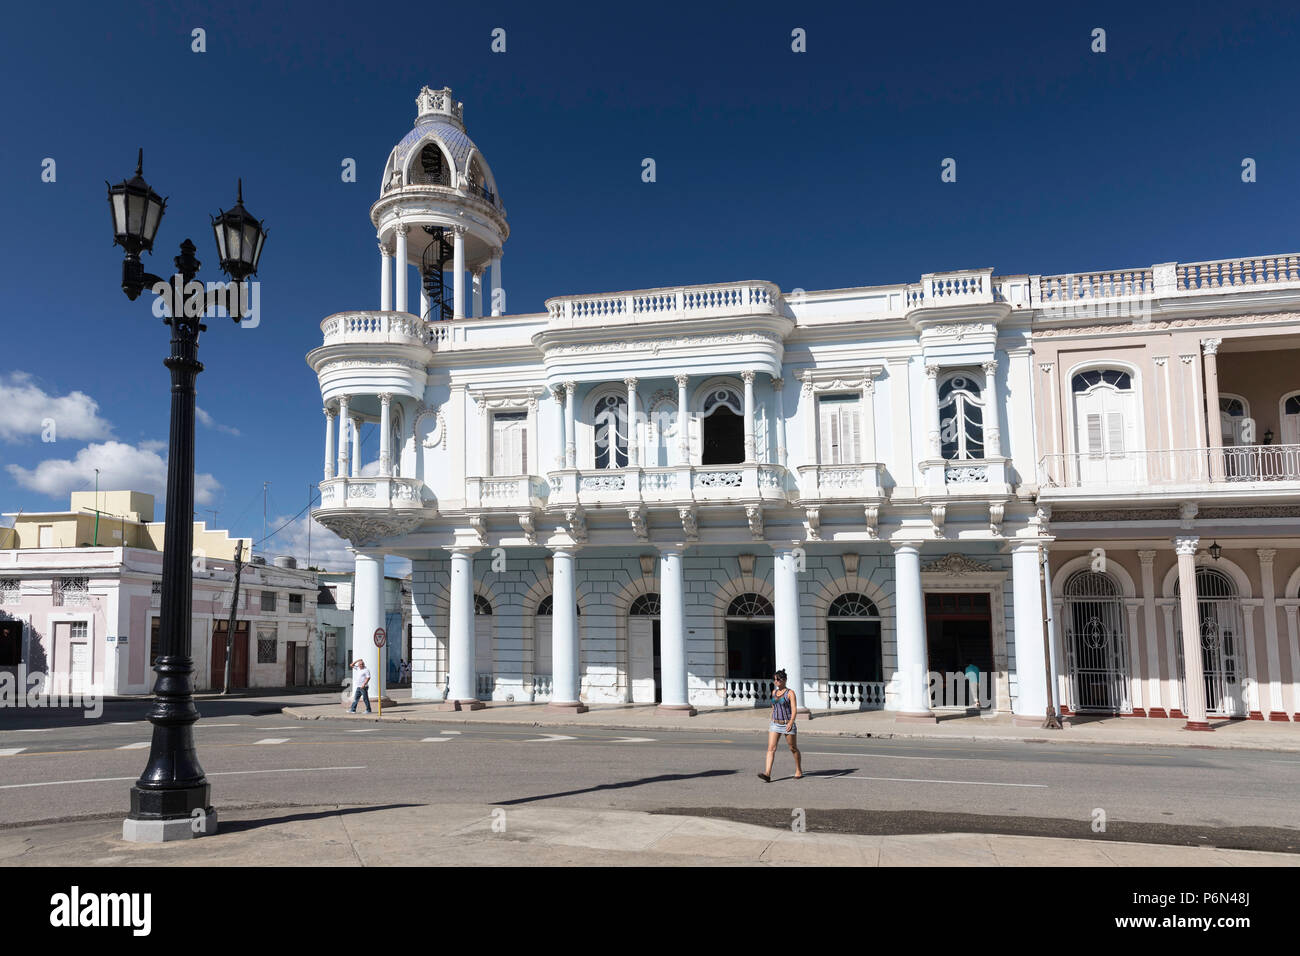 Casa de Cultura dans le Palacio Ferrer de la Plaza José Martí, La Havane, Cuba. Banque D'Images